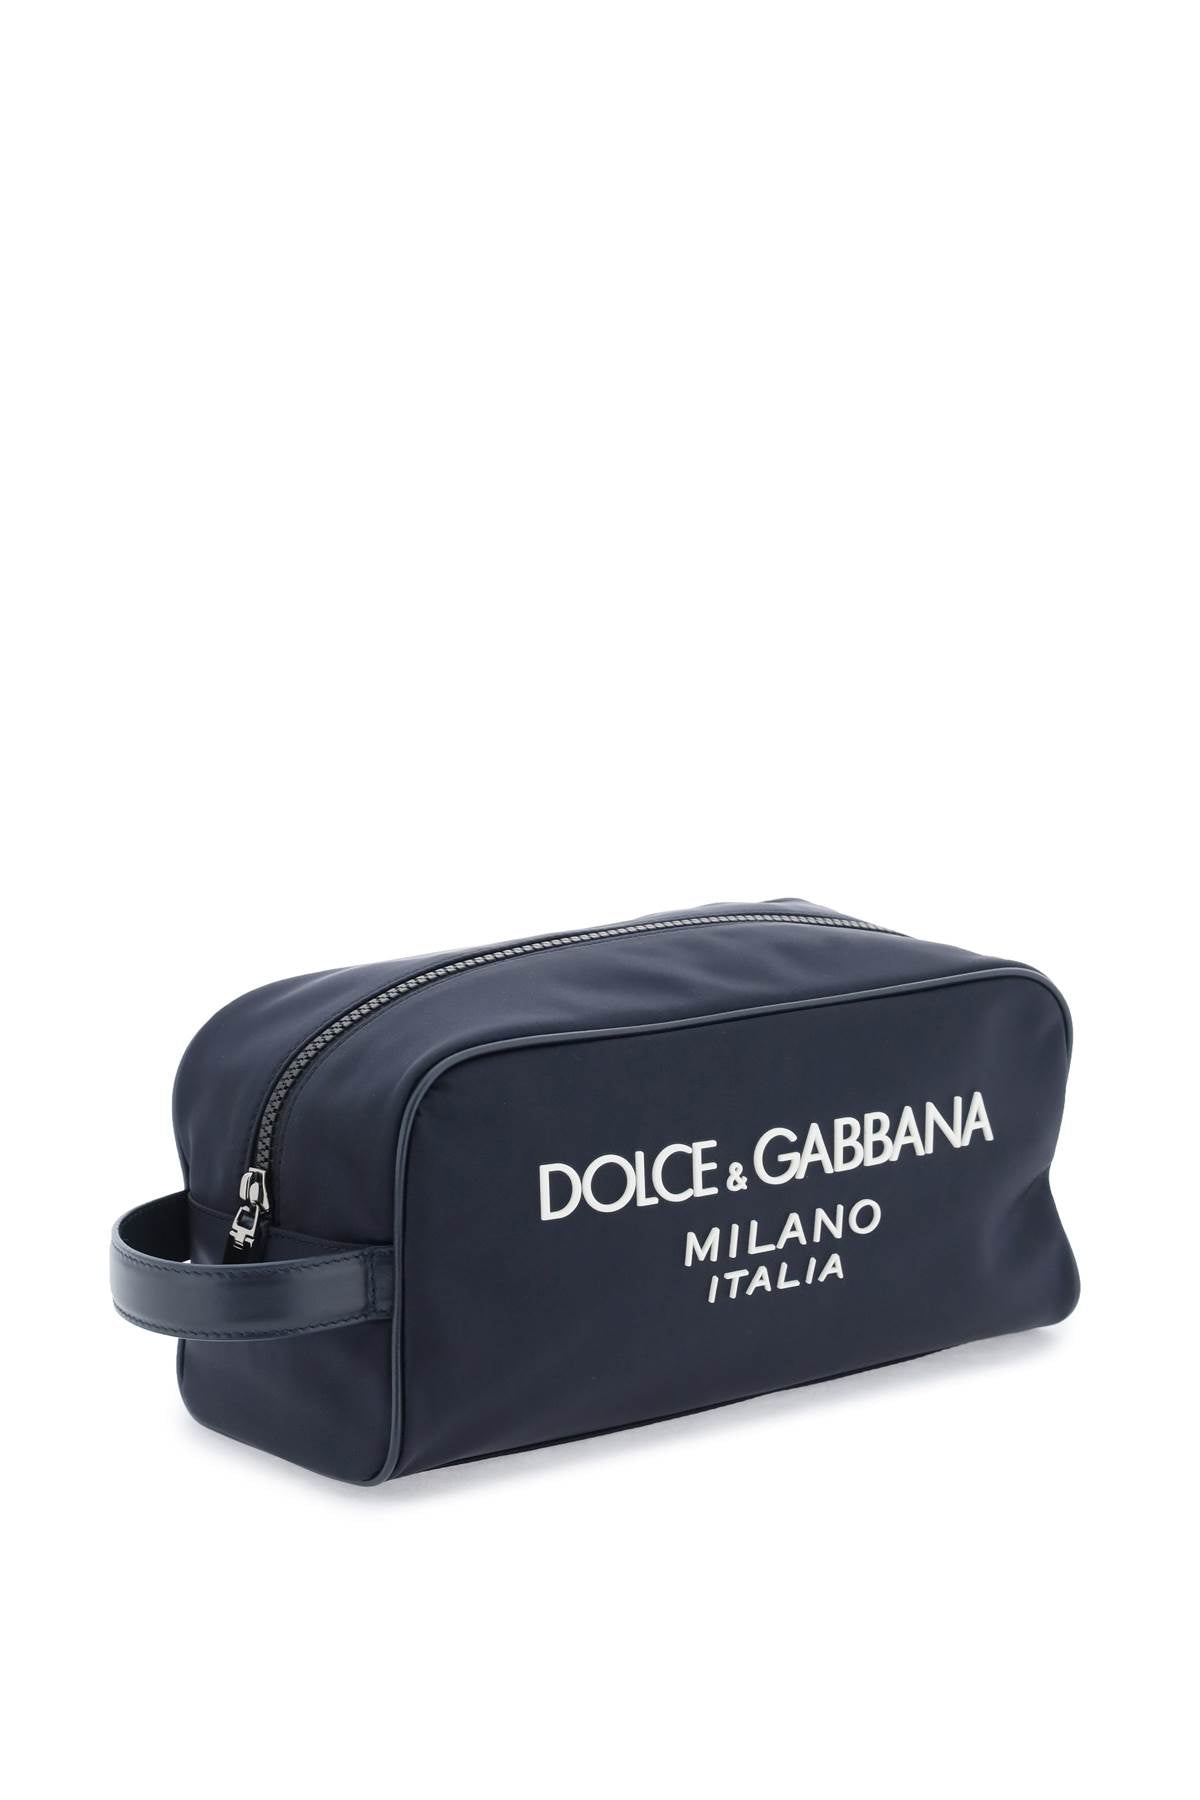 Dolce & gabbana rubberized logo beauty case-2